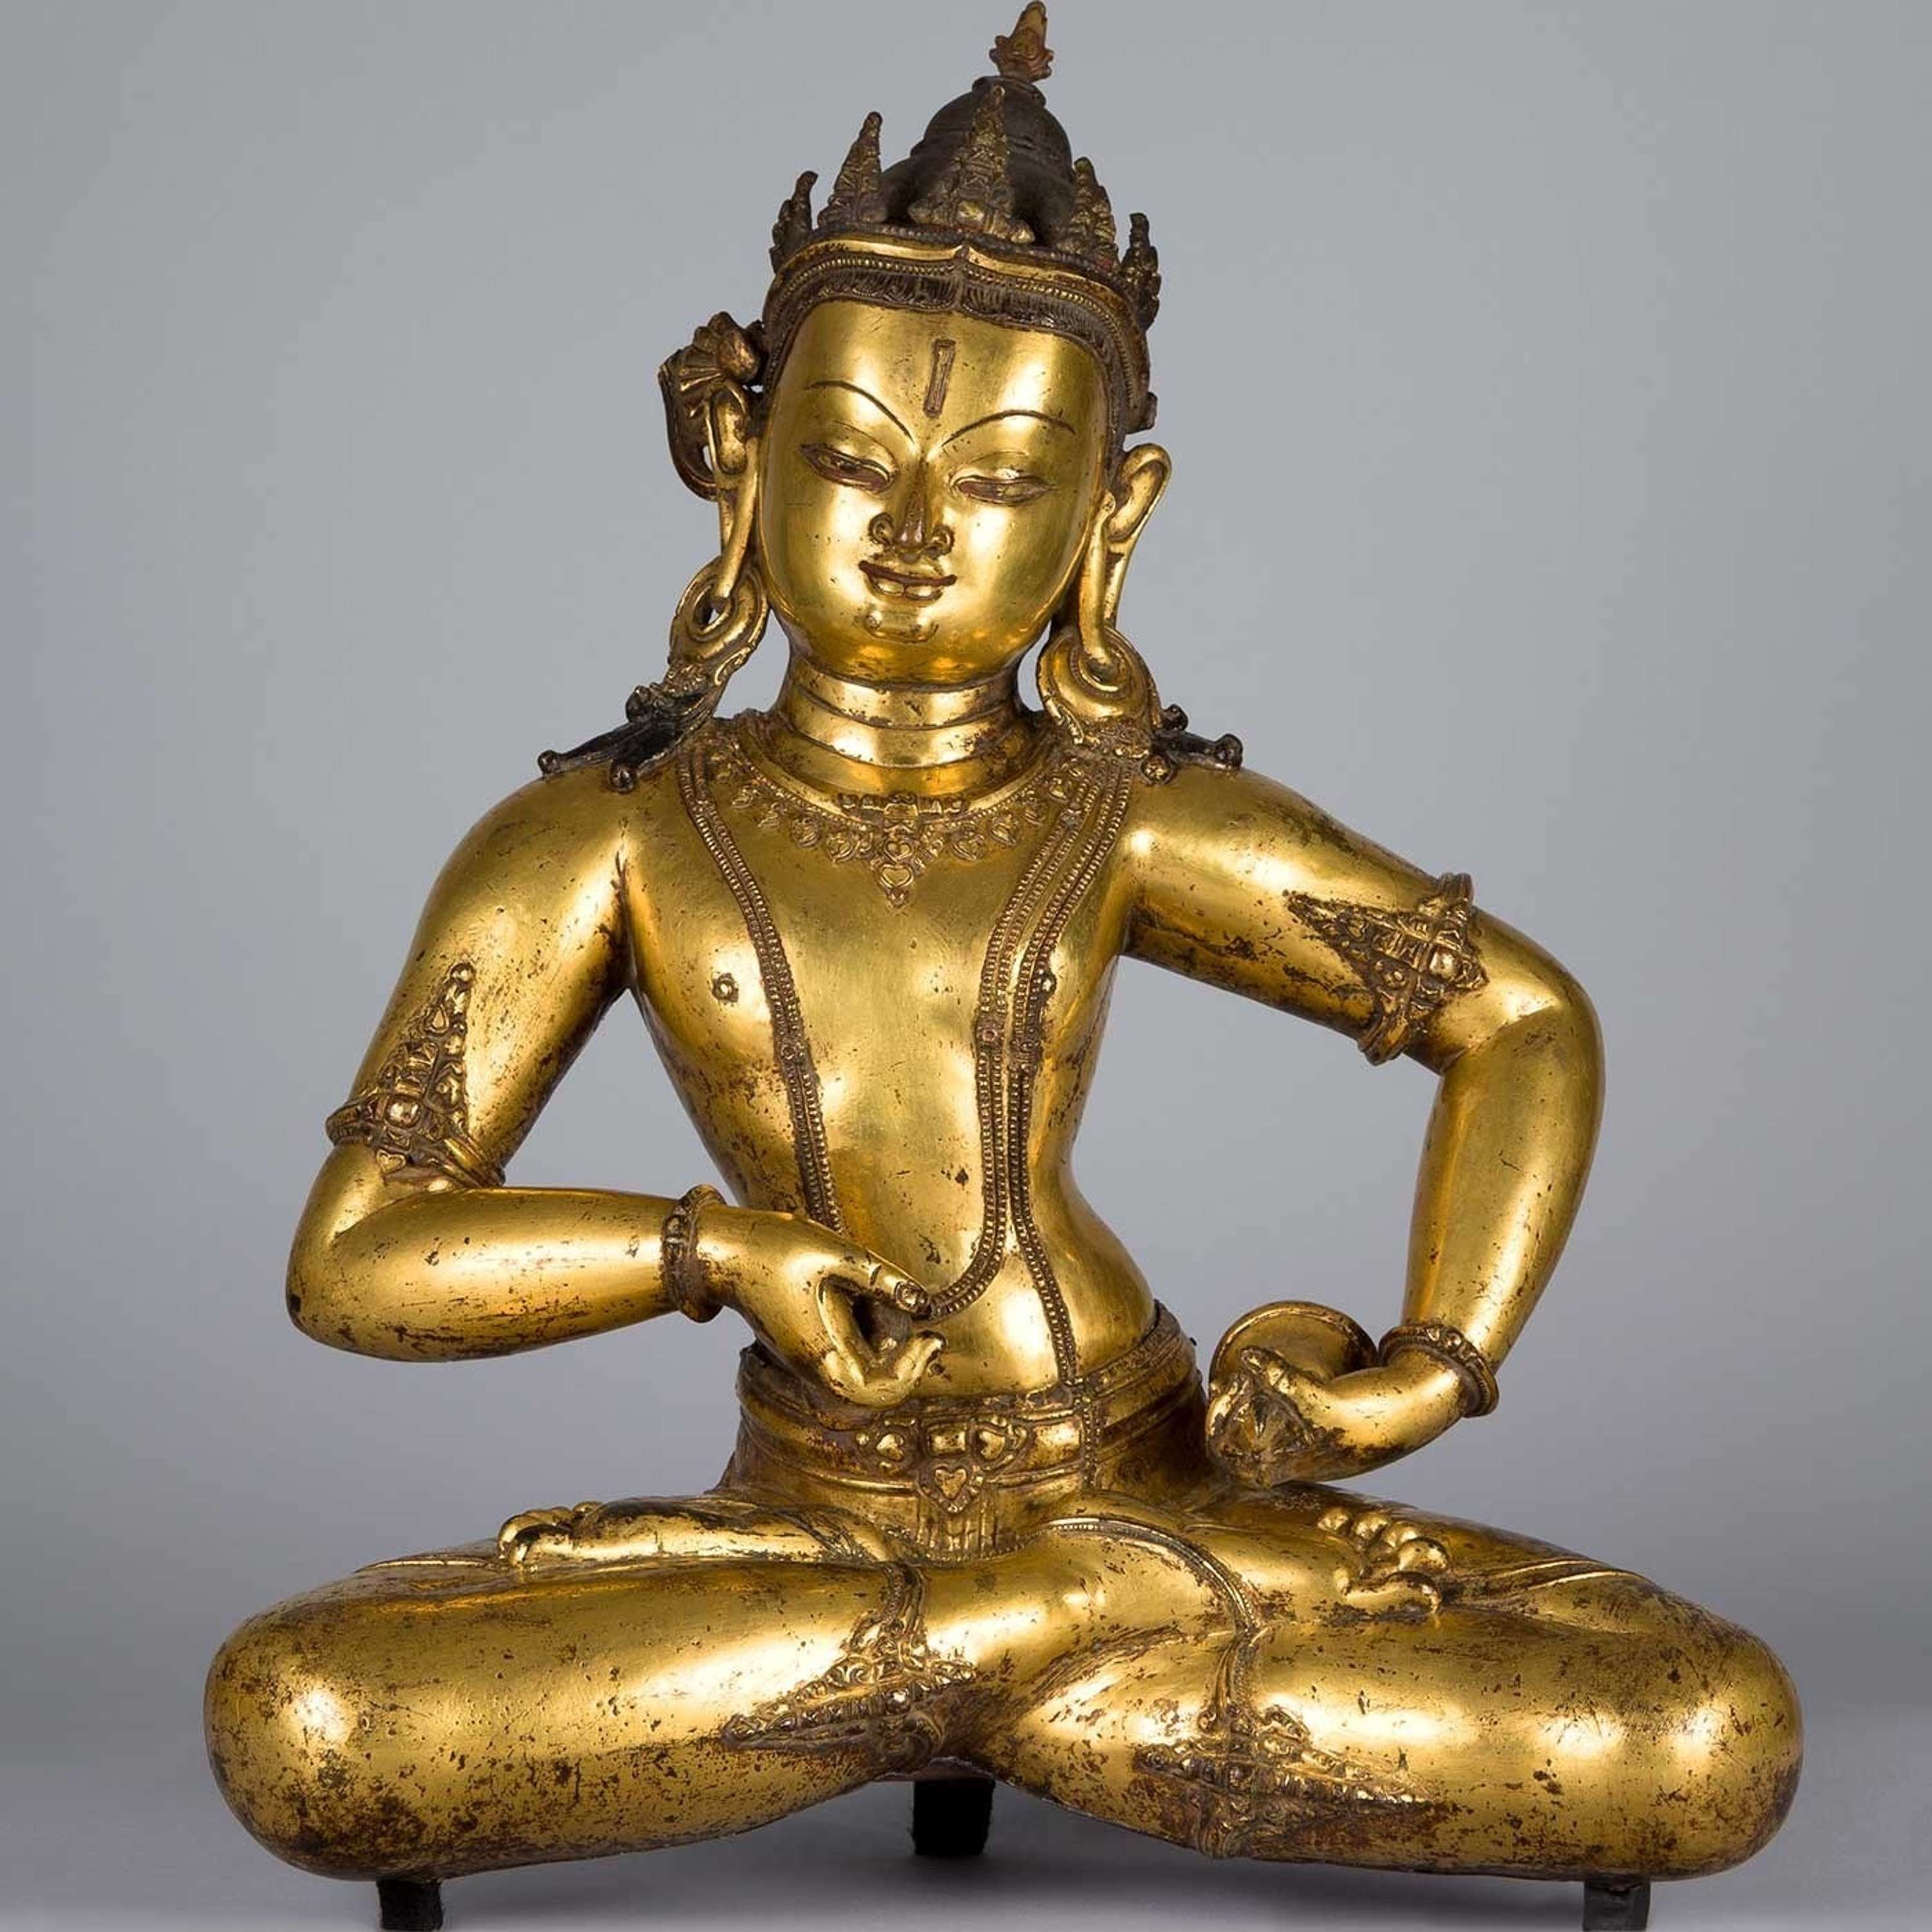 Mindfulness Meditation Khangser Rinpoche repost from 06/01/16